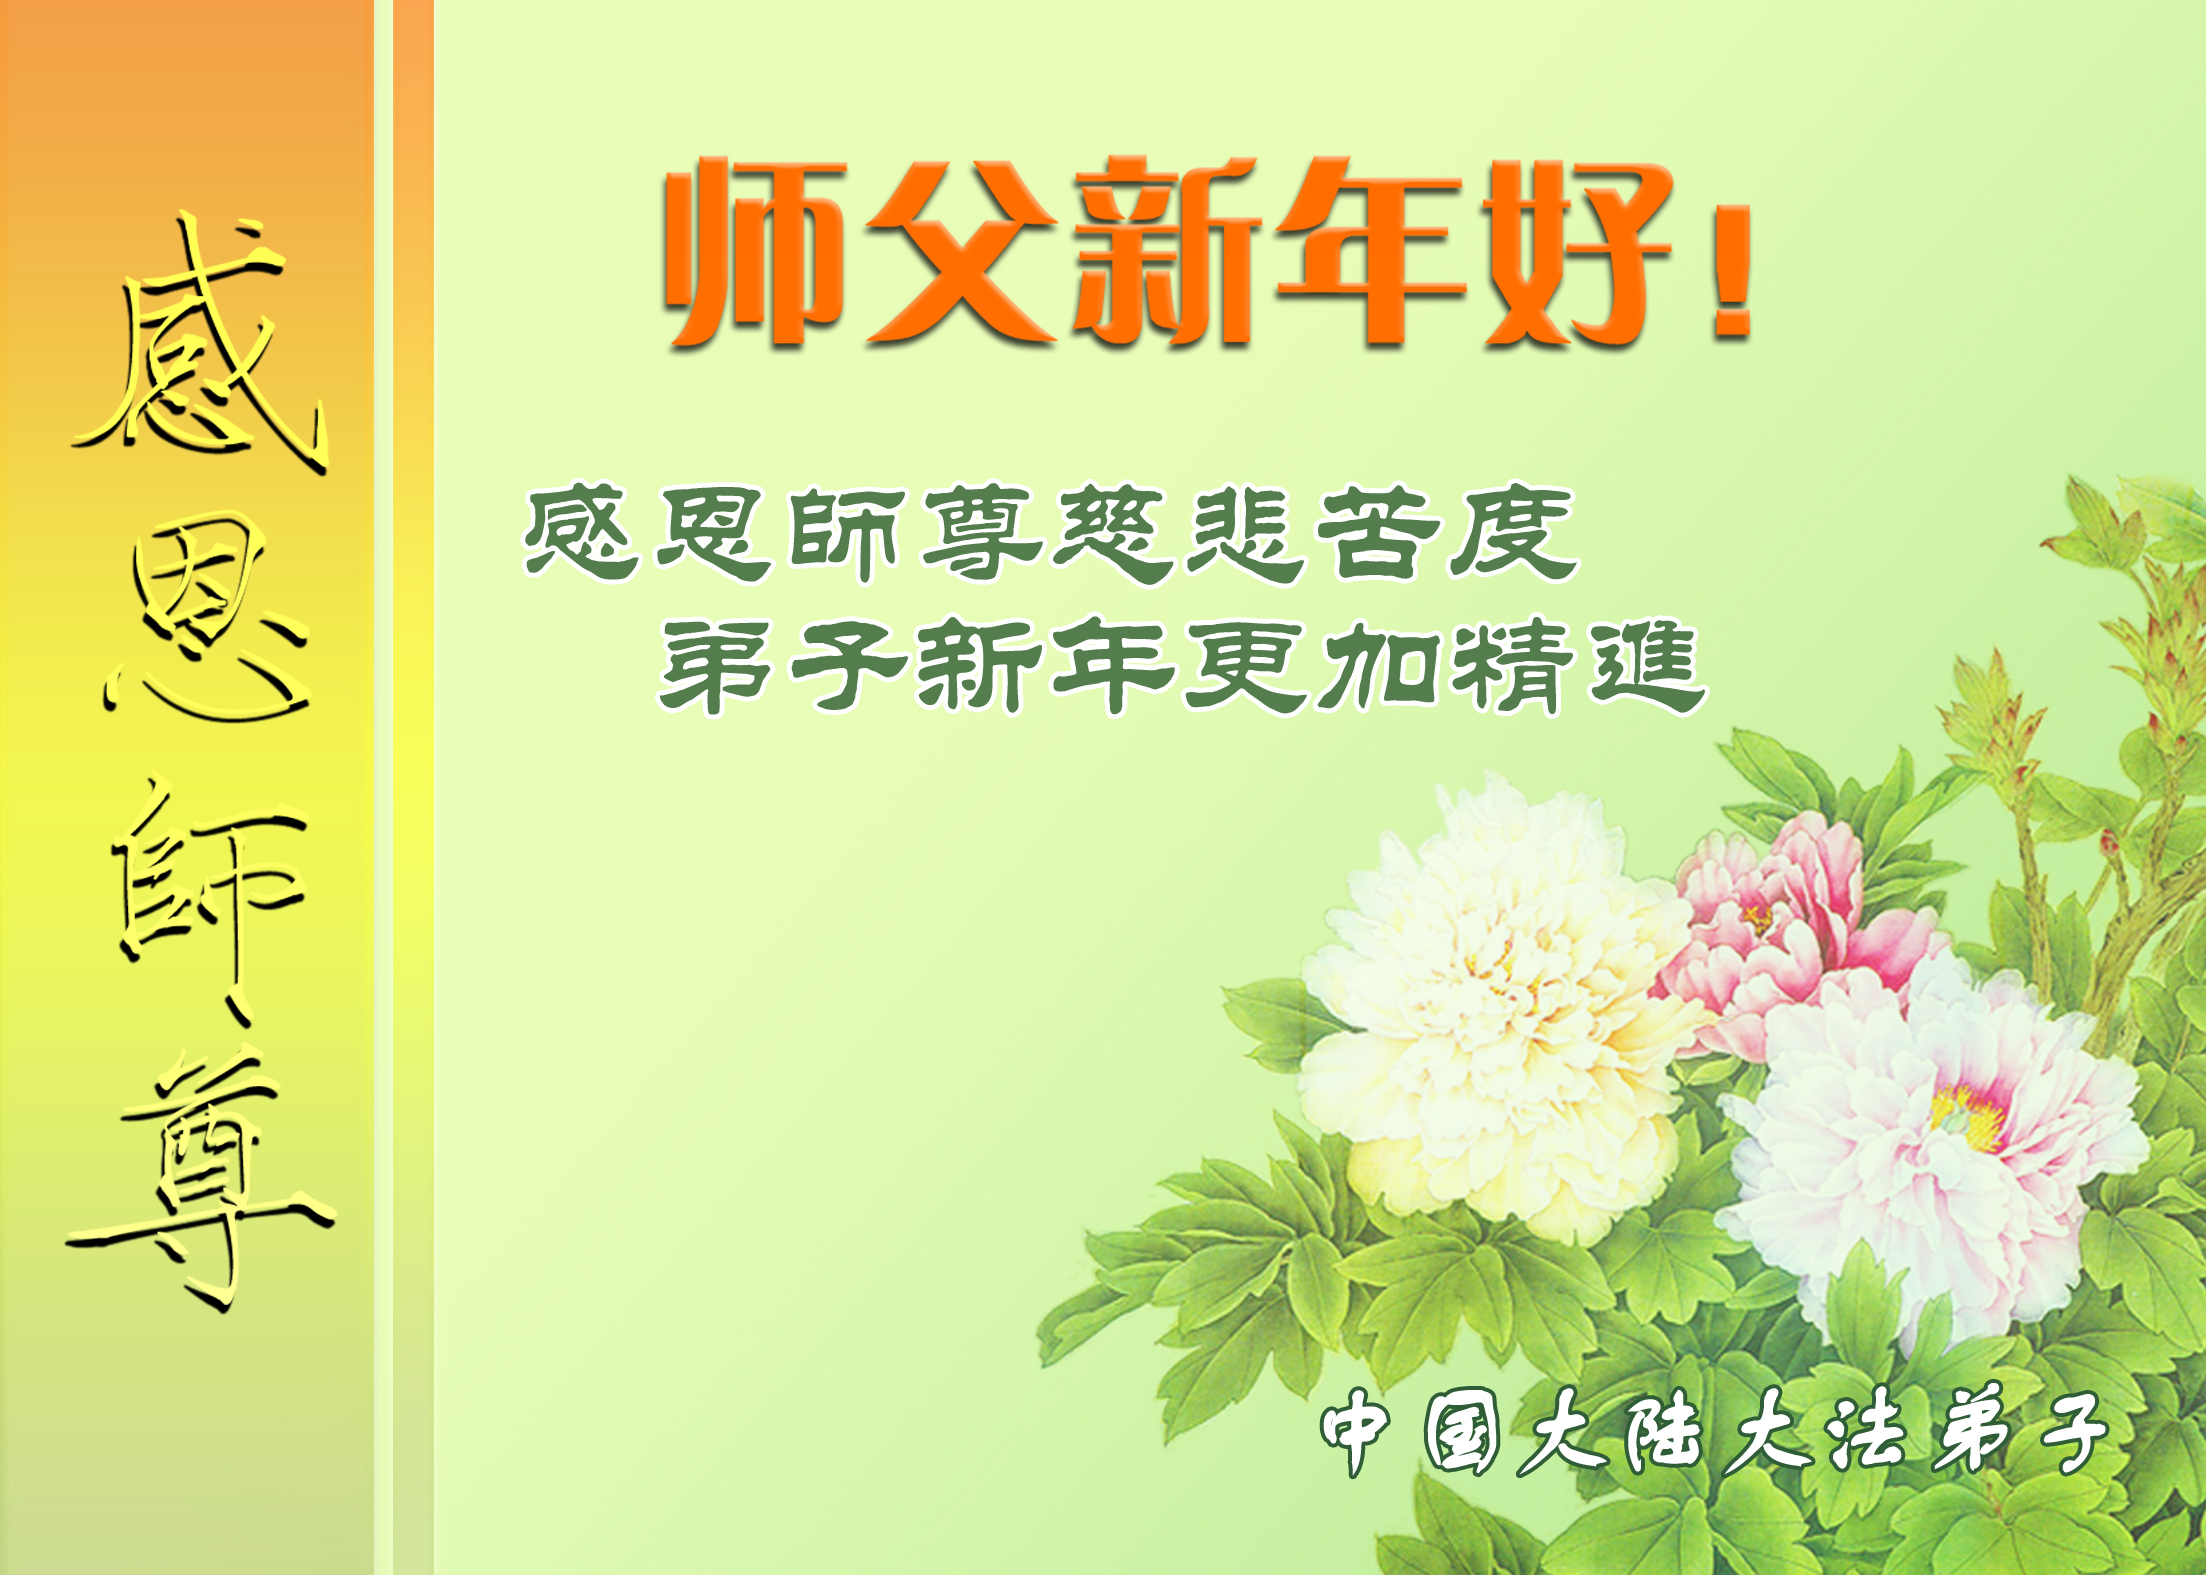 Image for article Les disciples de Falun Dafa de toute la Chine souhaitent au vénérable Maître un bon Nouvel An chinois